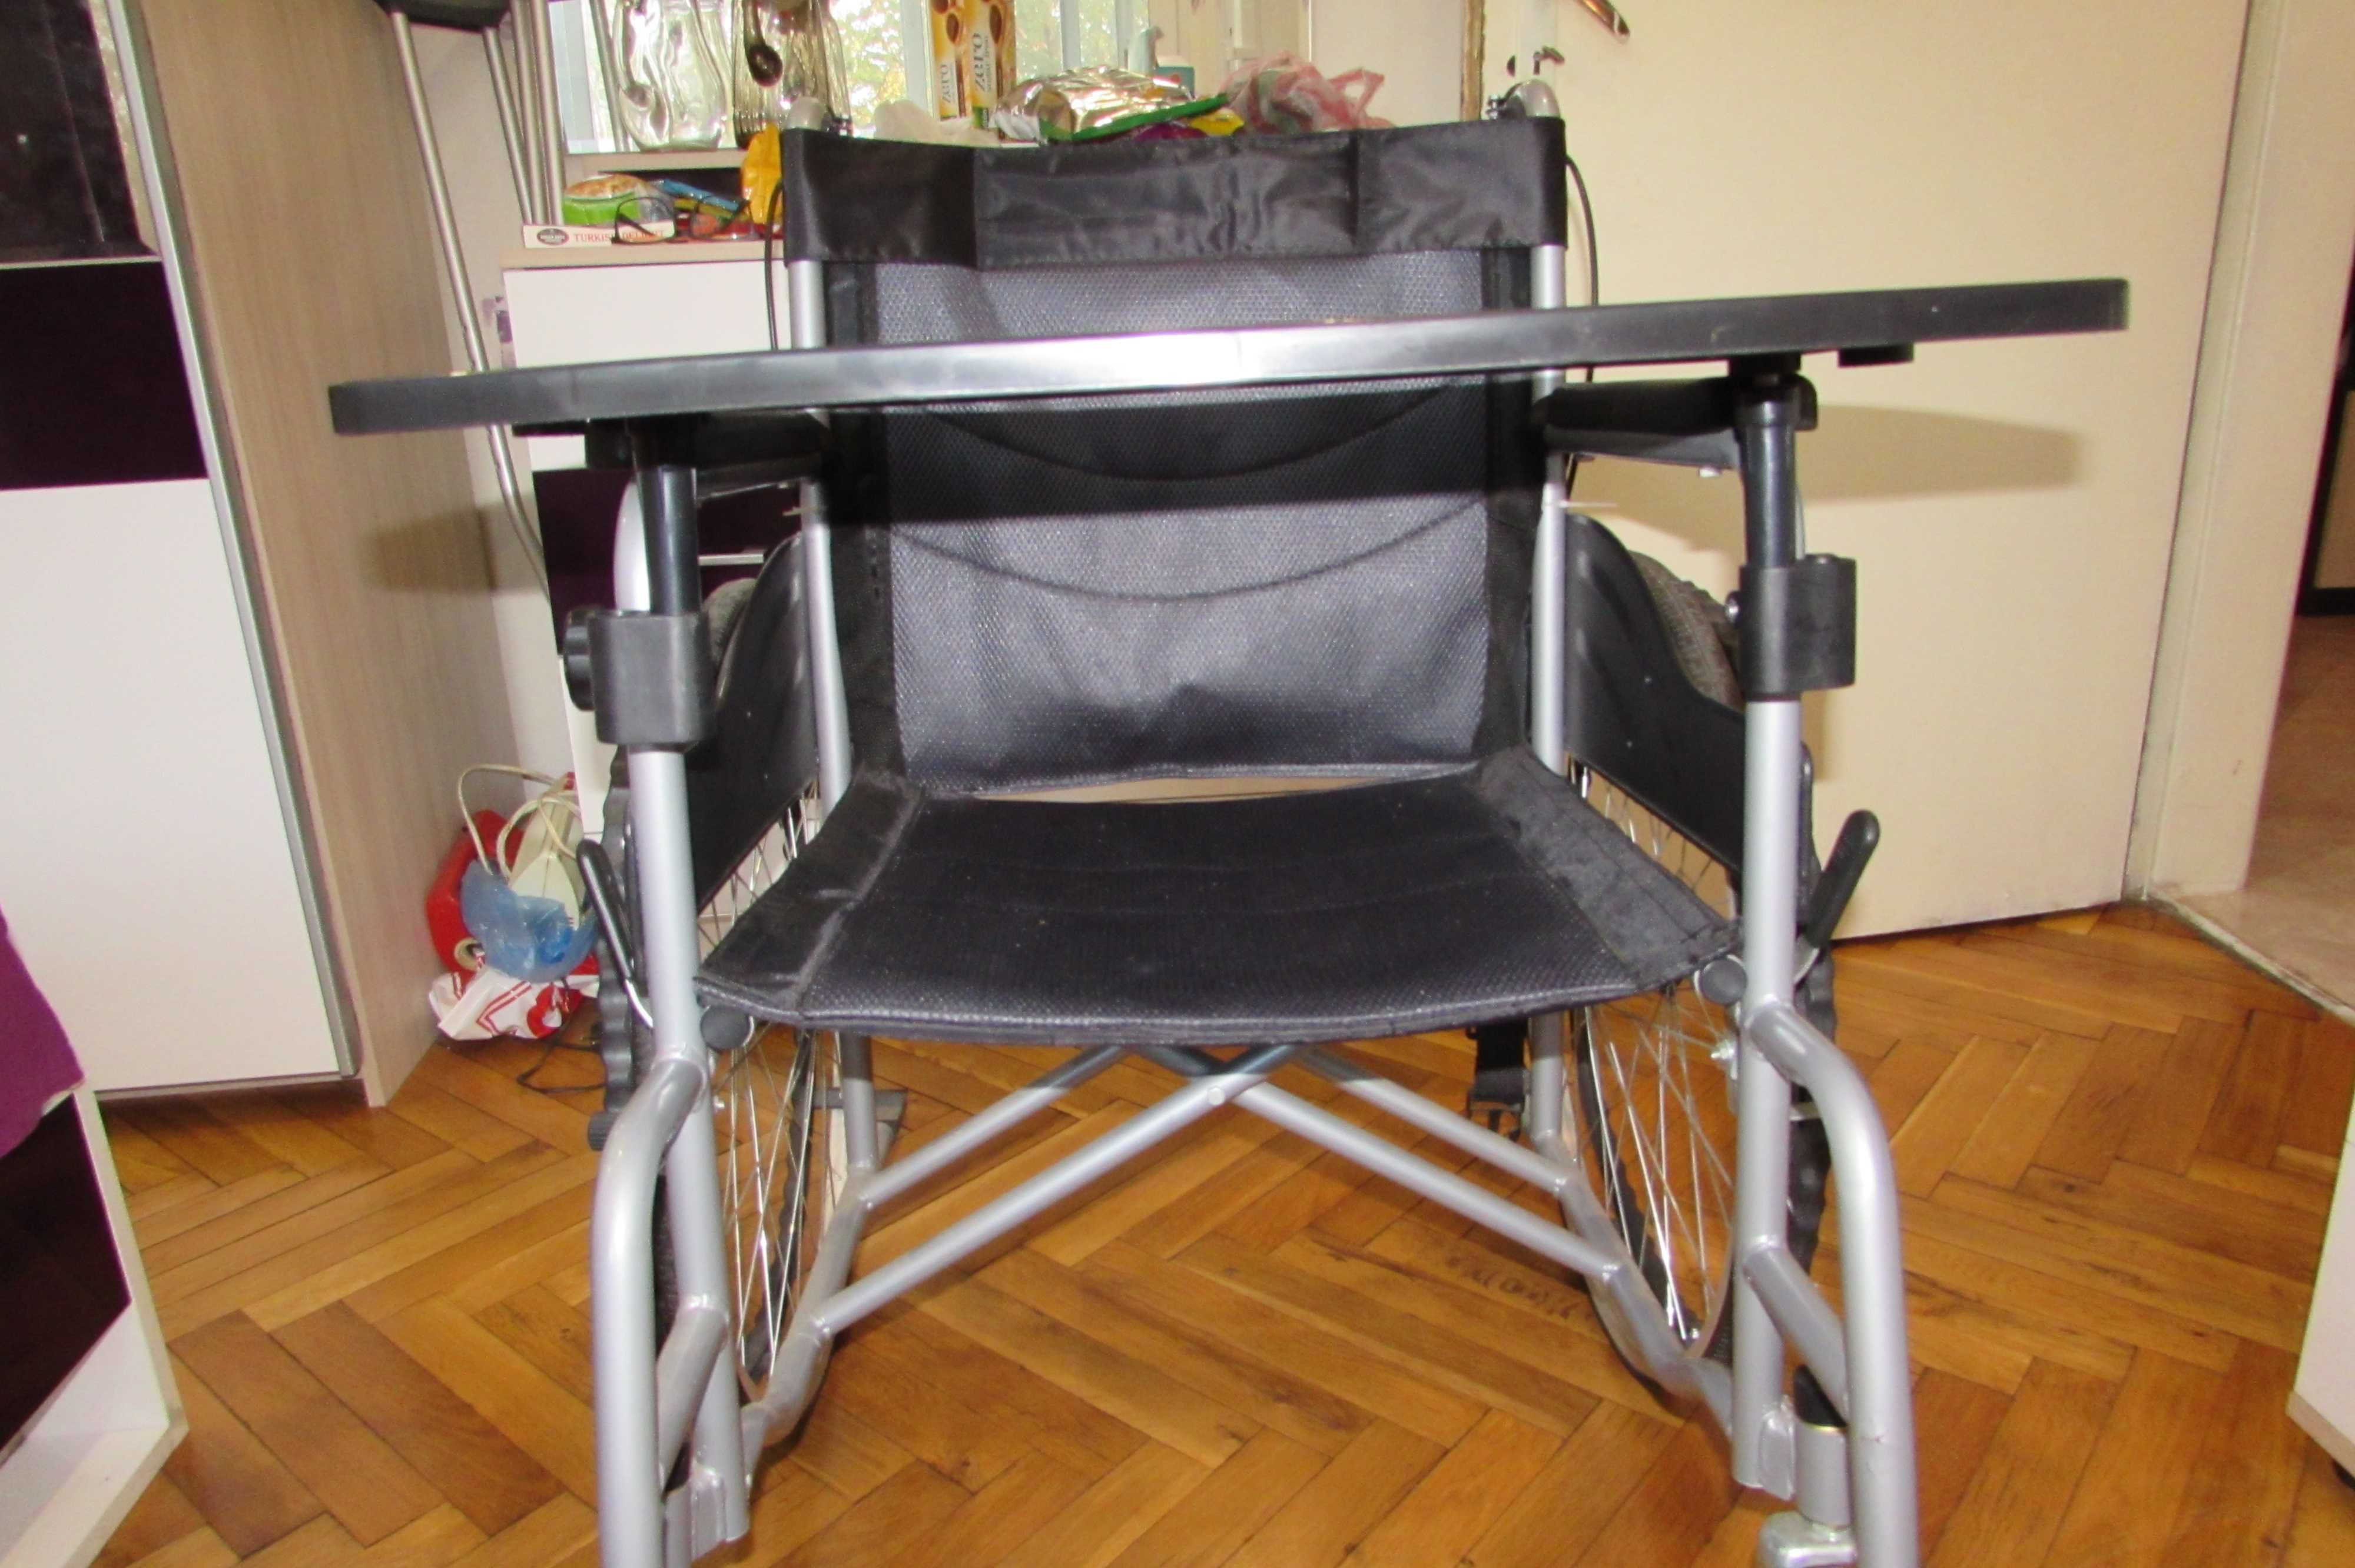 Рингова инвалидна количка + подарък масичка